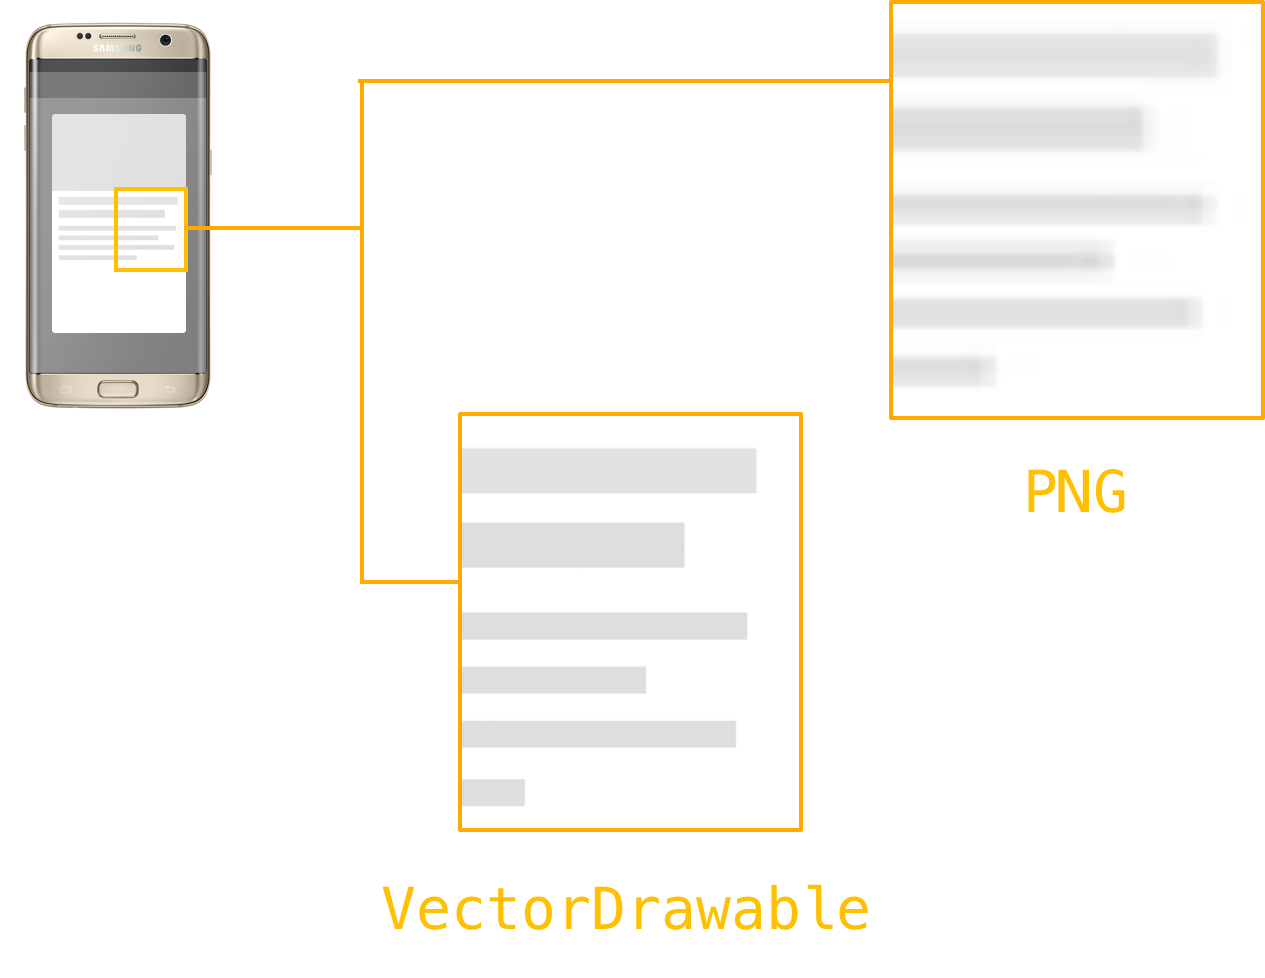 VectorDrawable vs PNG